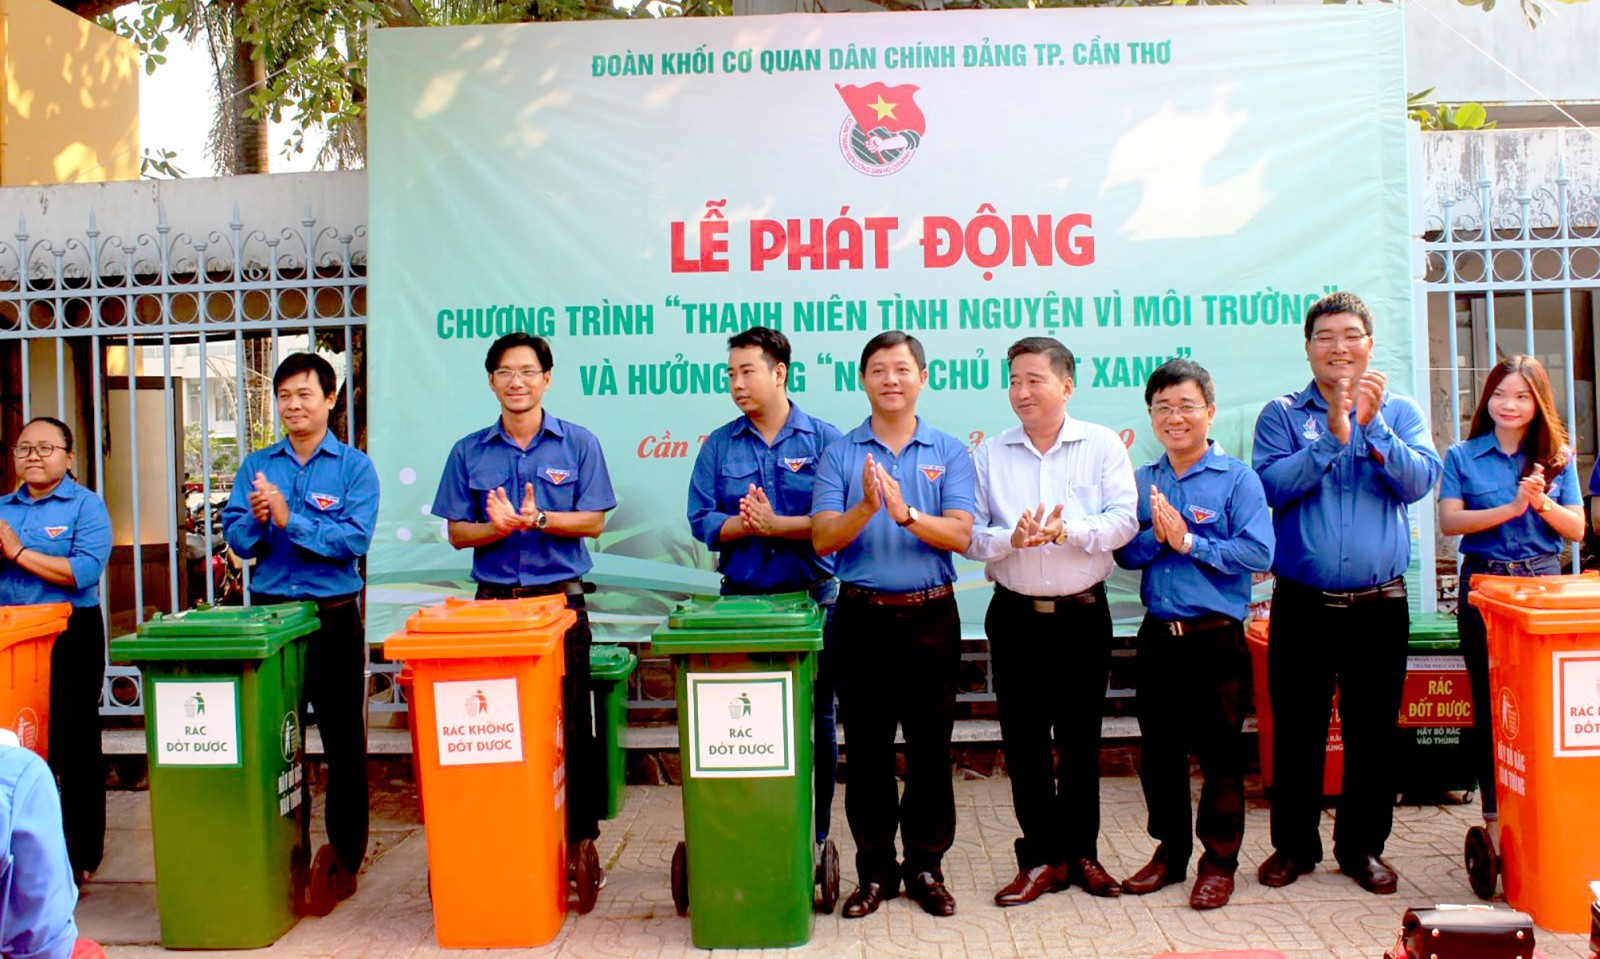 Đoàn Khối Cơ quan Dân Chính Đảng trao thùng đựng rác cho các cơ sở Đoàn trực thuộc. Ảnh: QUỲNH LAM